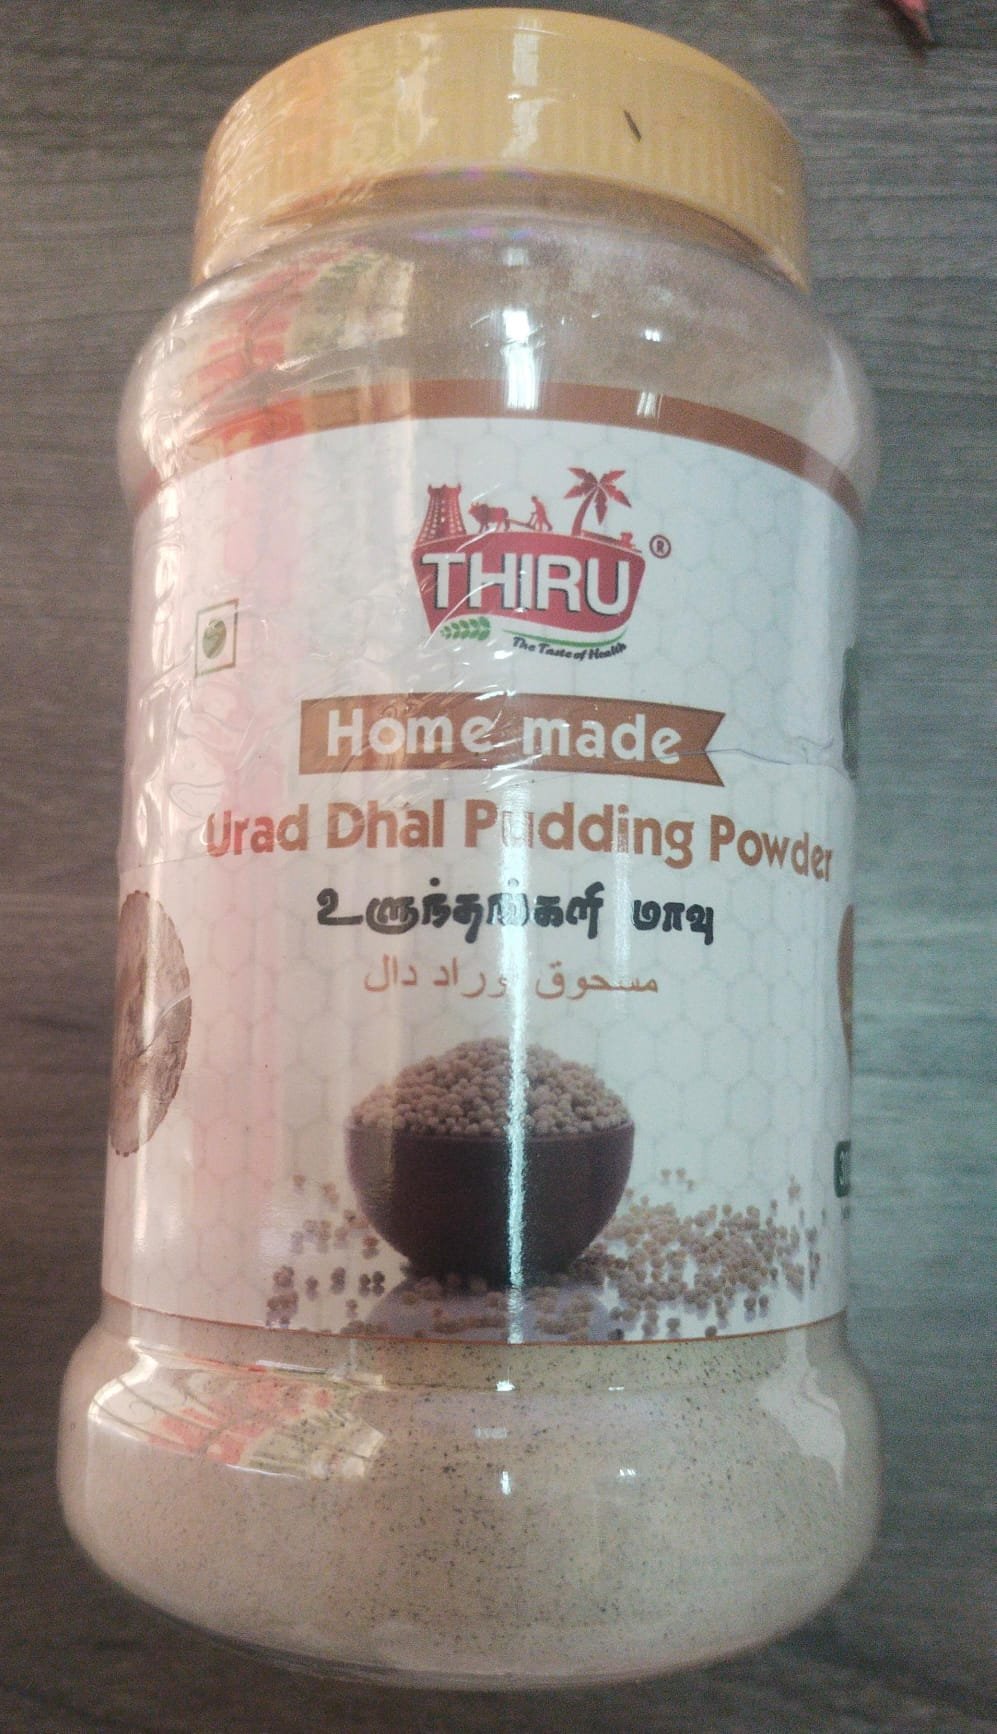 PUDDING POWDER URAD DHAL THIRU 300GM